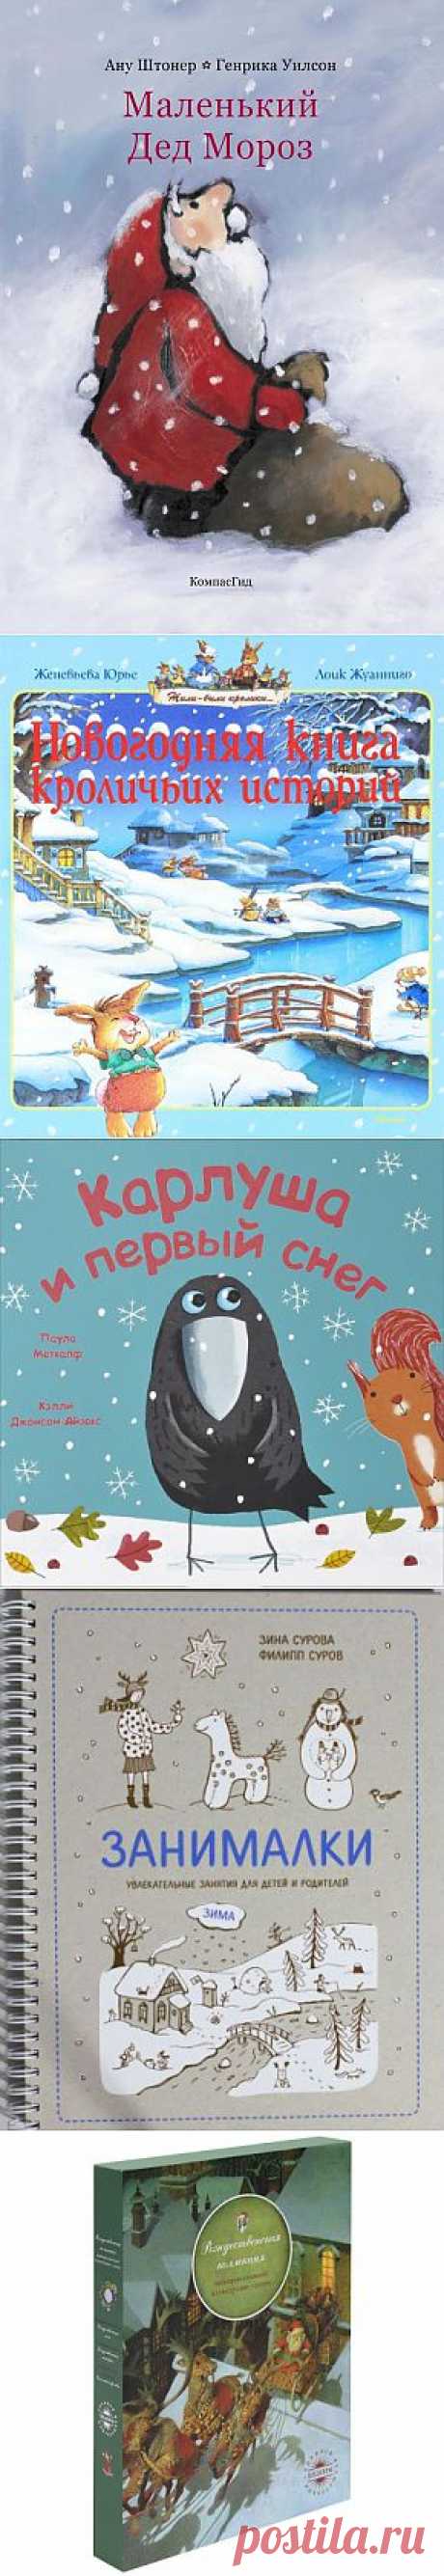 10 лучших детских книг зимы |